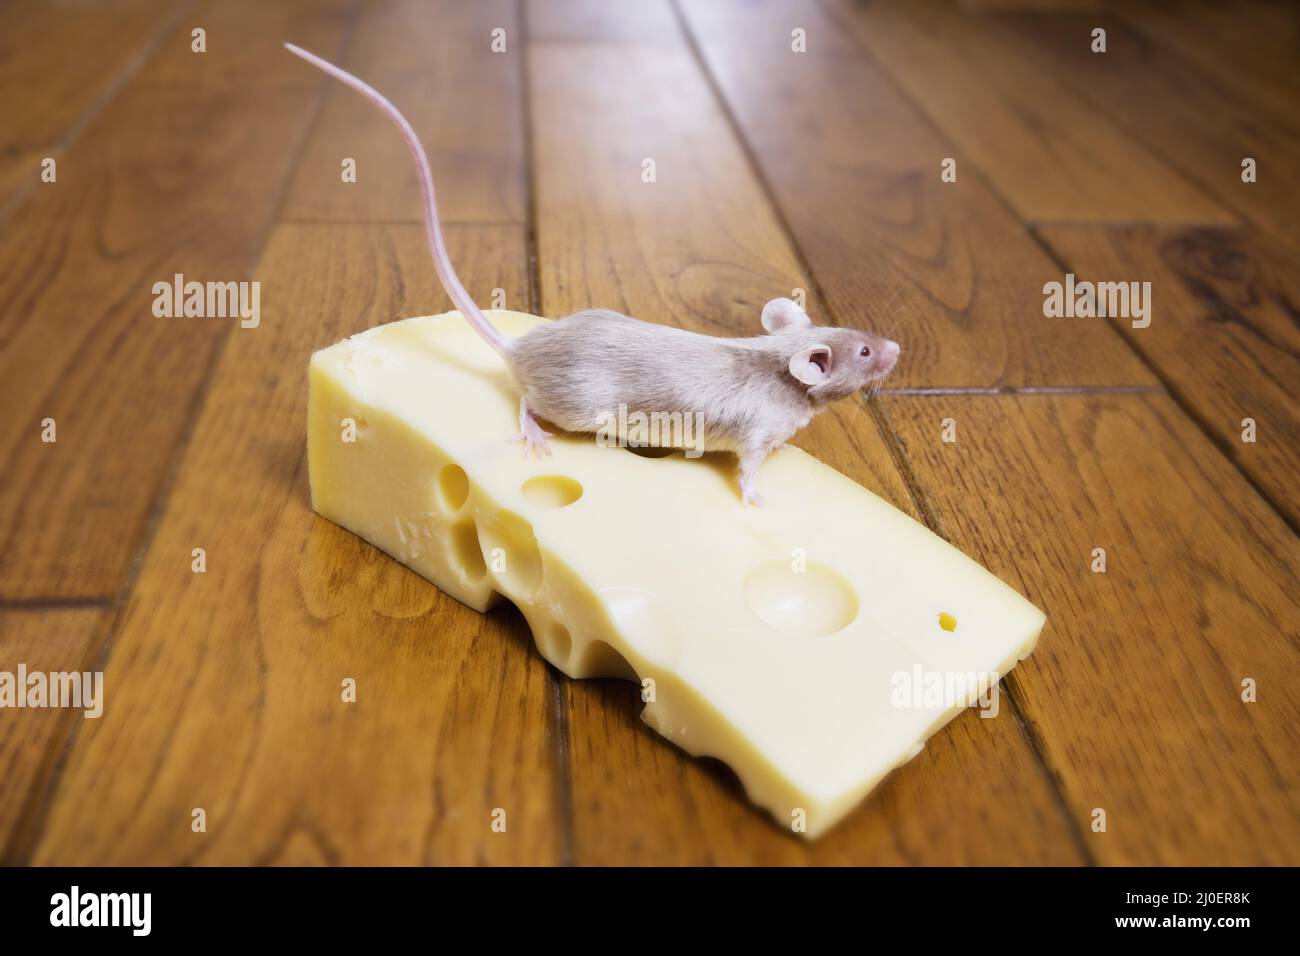 Une souris sur un morceau de fromage Banque D'Images